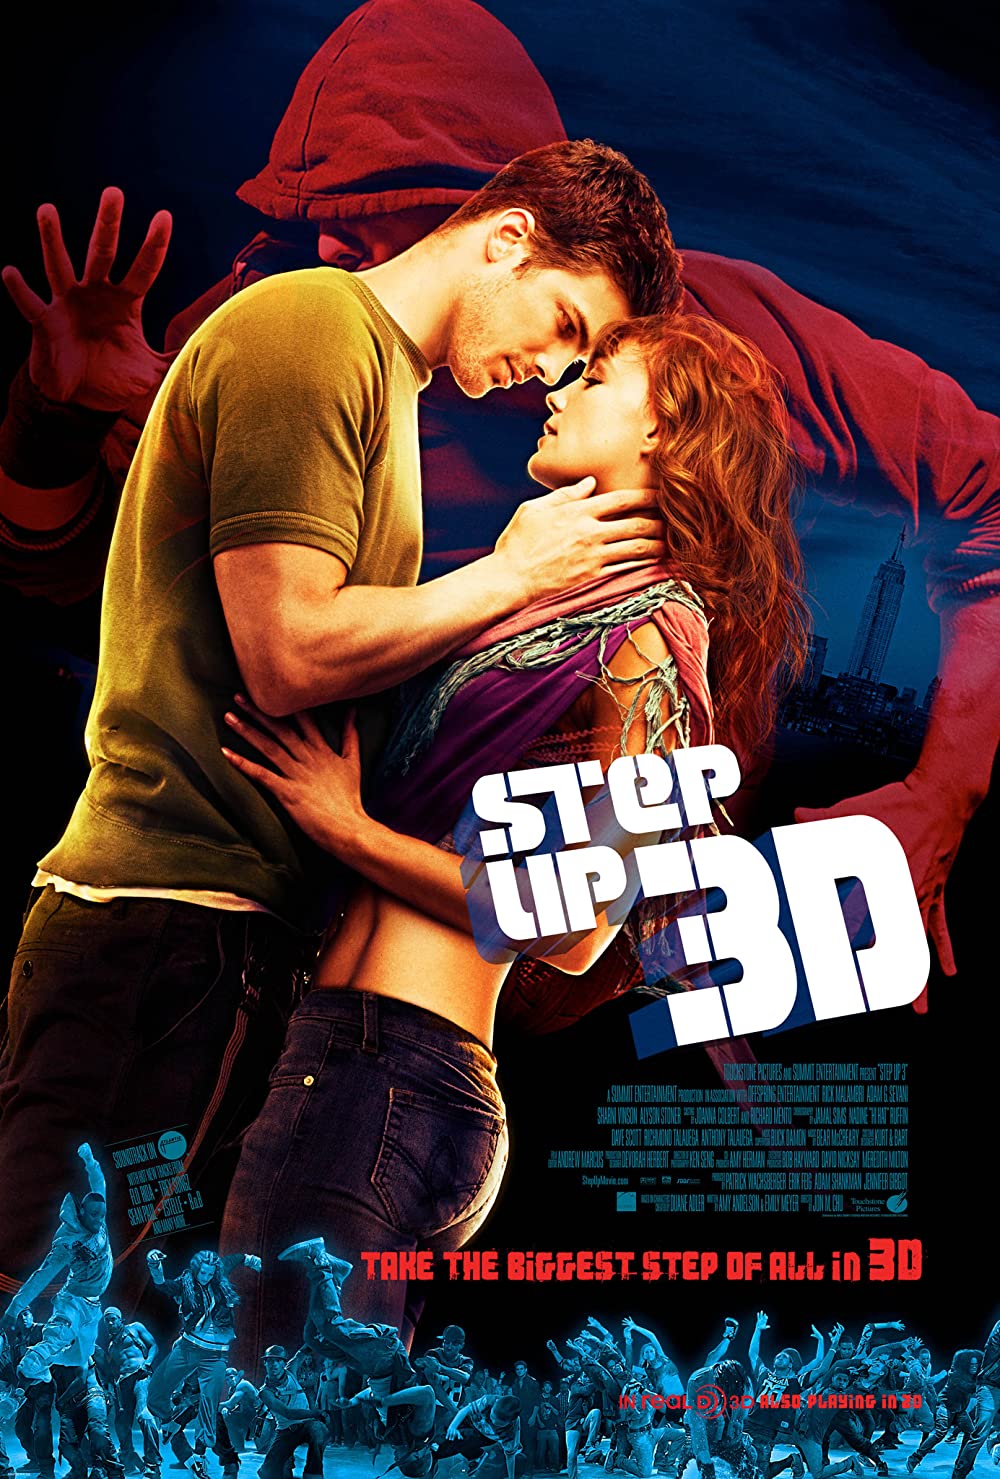 Filmbeschreibung zu Step Up 3D